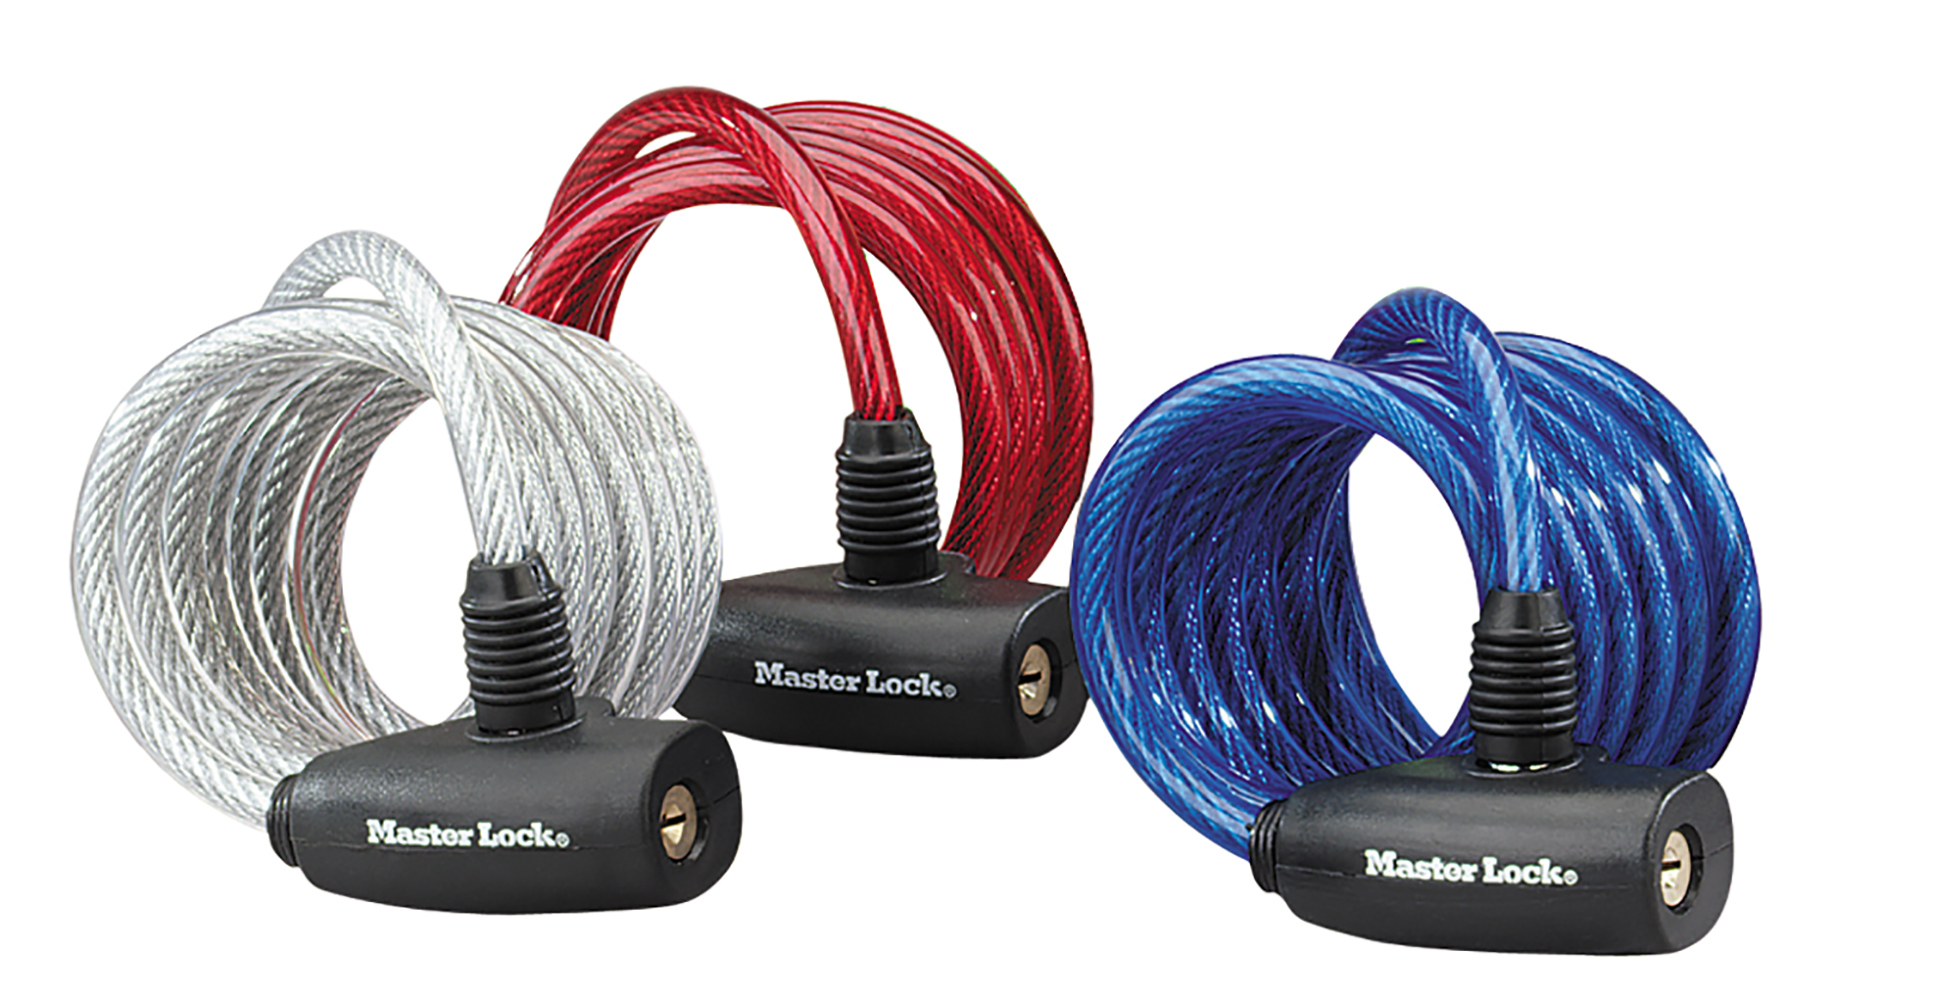 Masterlock Kabelslot van 1,8 m met een diameter van 8 mm, met sleutels; verschillende kleuren; set van 3